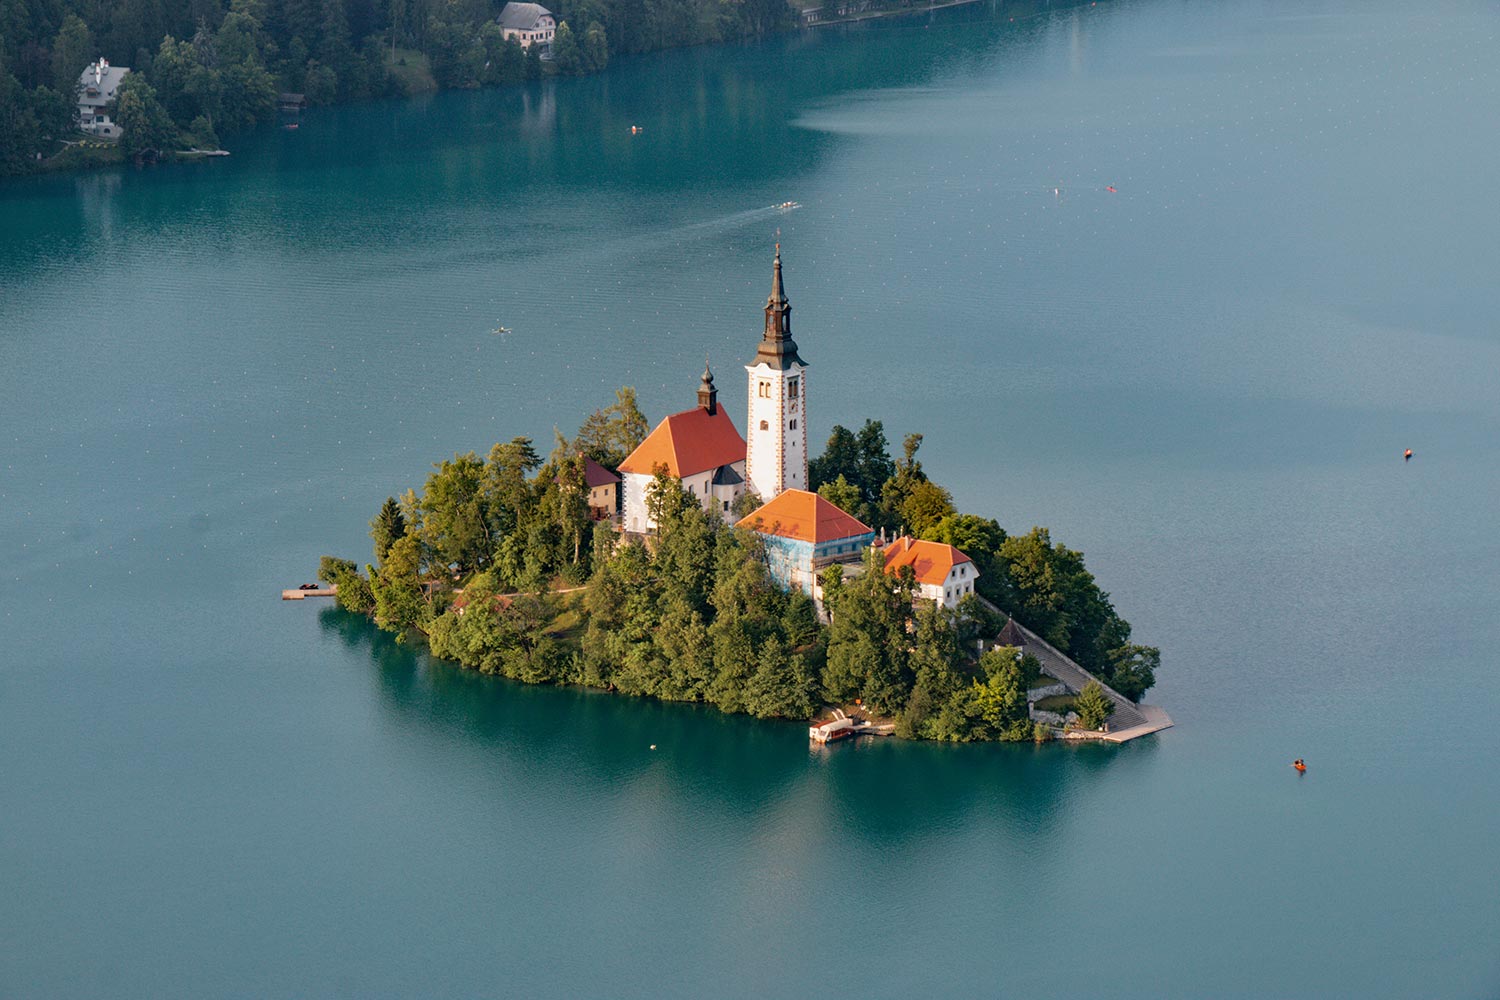 Église, Lac Bled, Slovénie / Church, Lake Bled, Slovenia